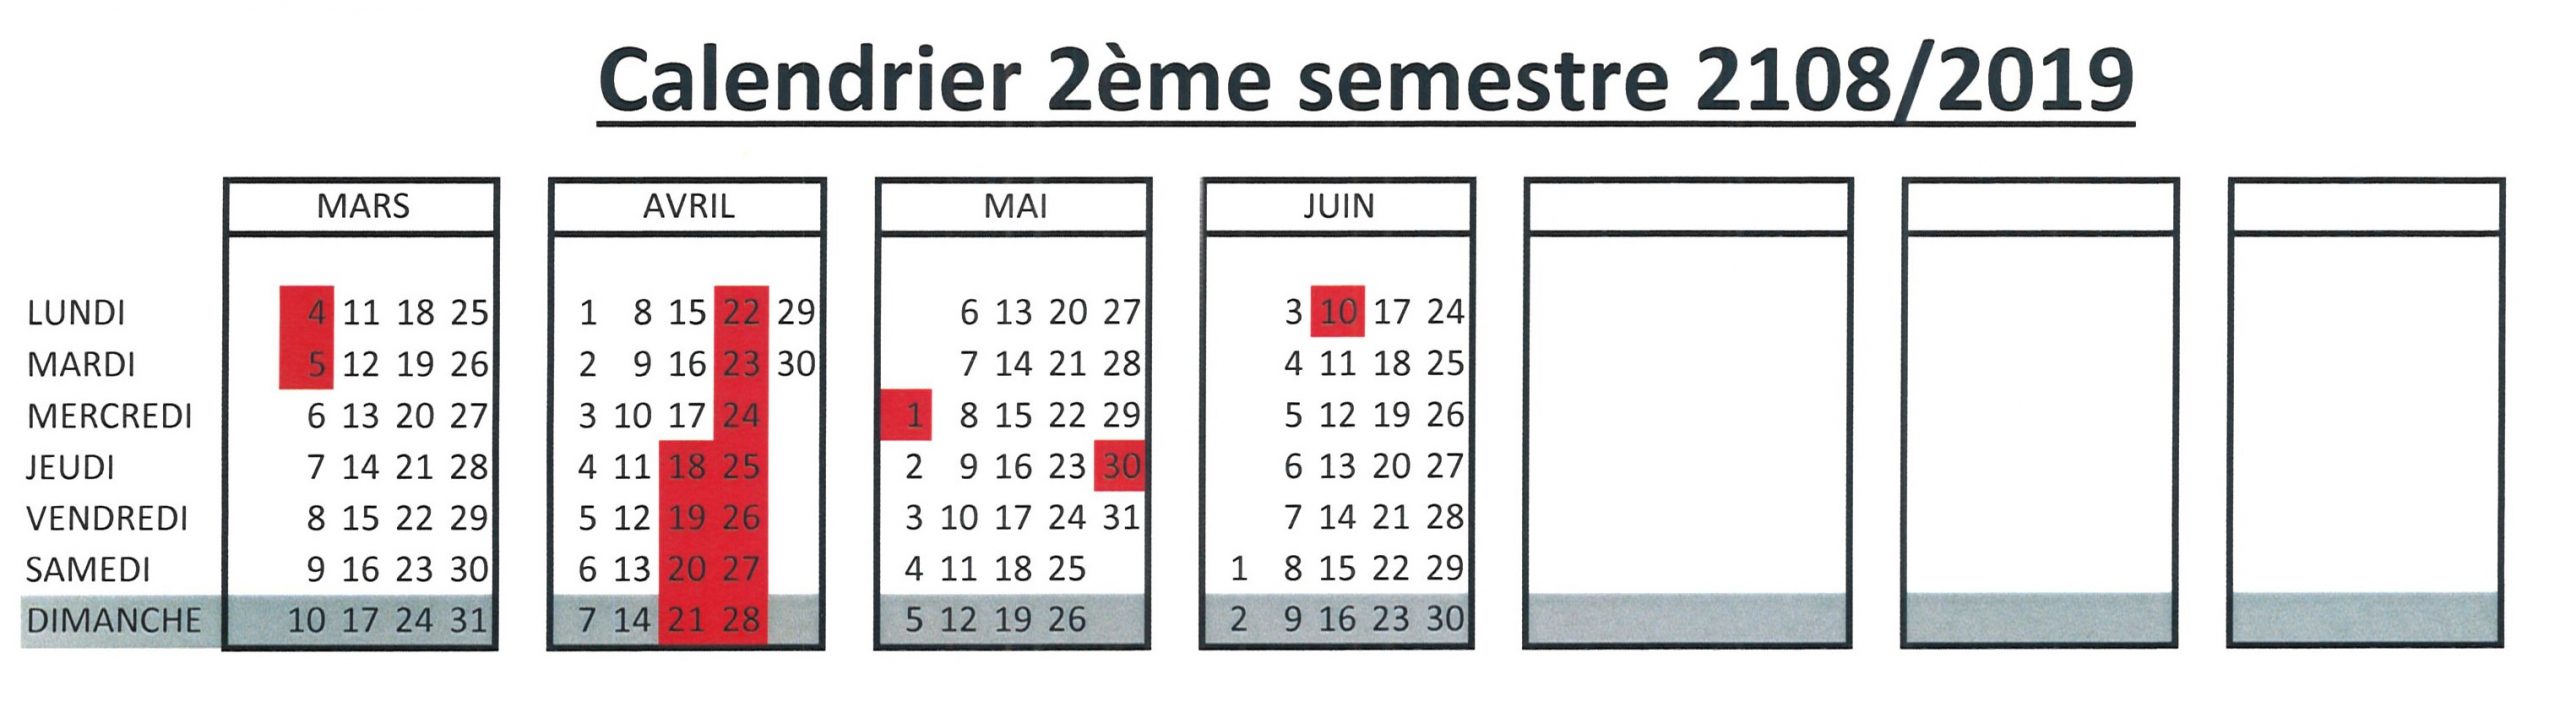 Calendrier 2Ème Semestre - Ecole De Natation Genève - Eng concernant Calendrier 2Ème Semestre 2018